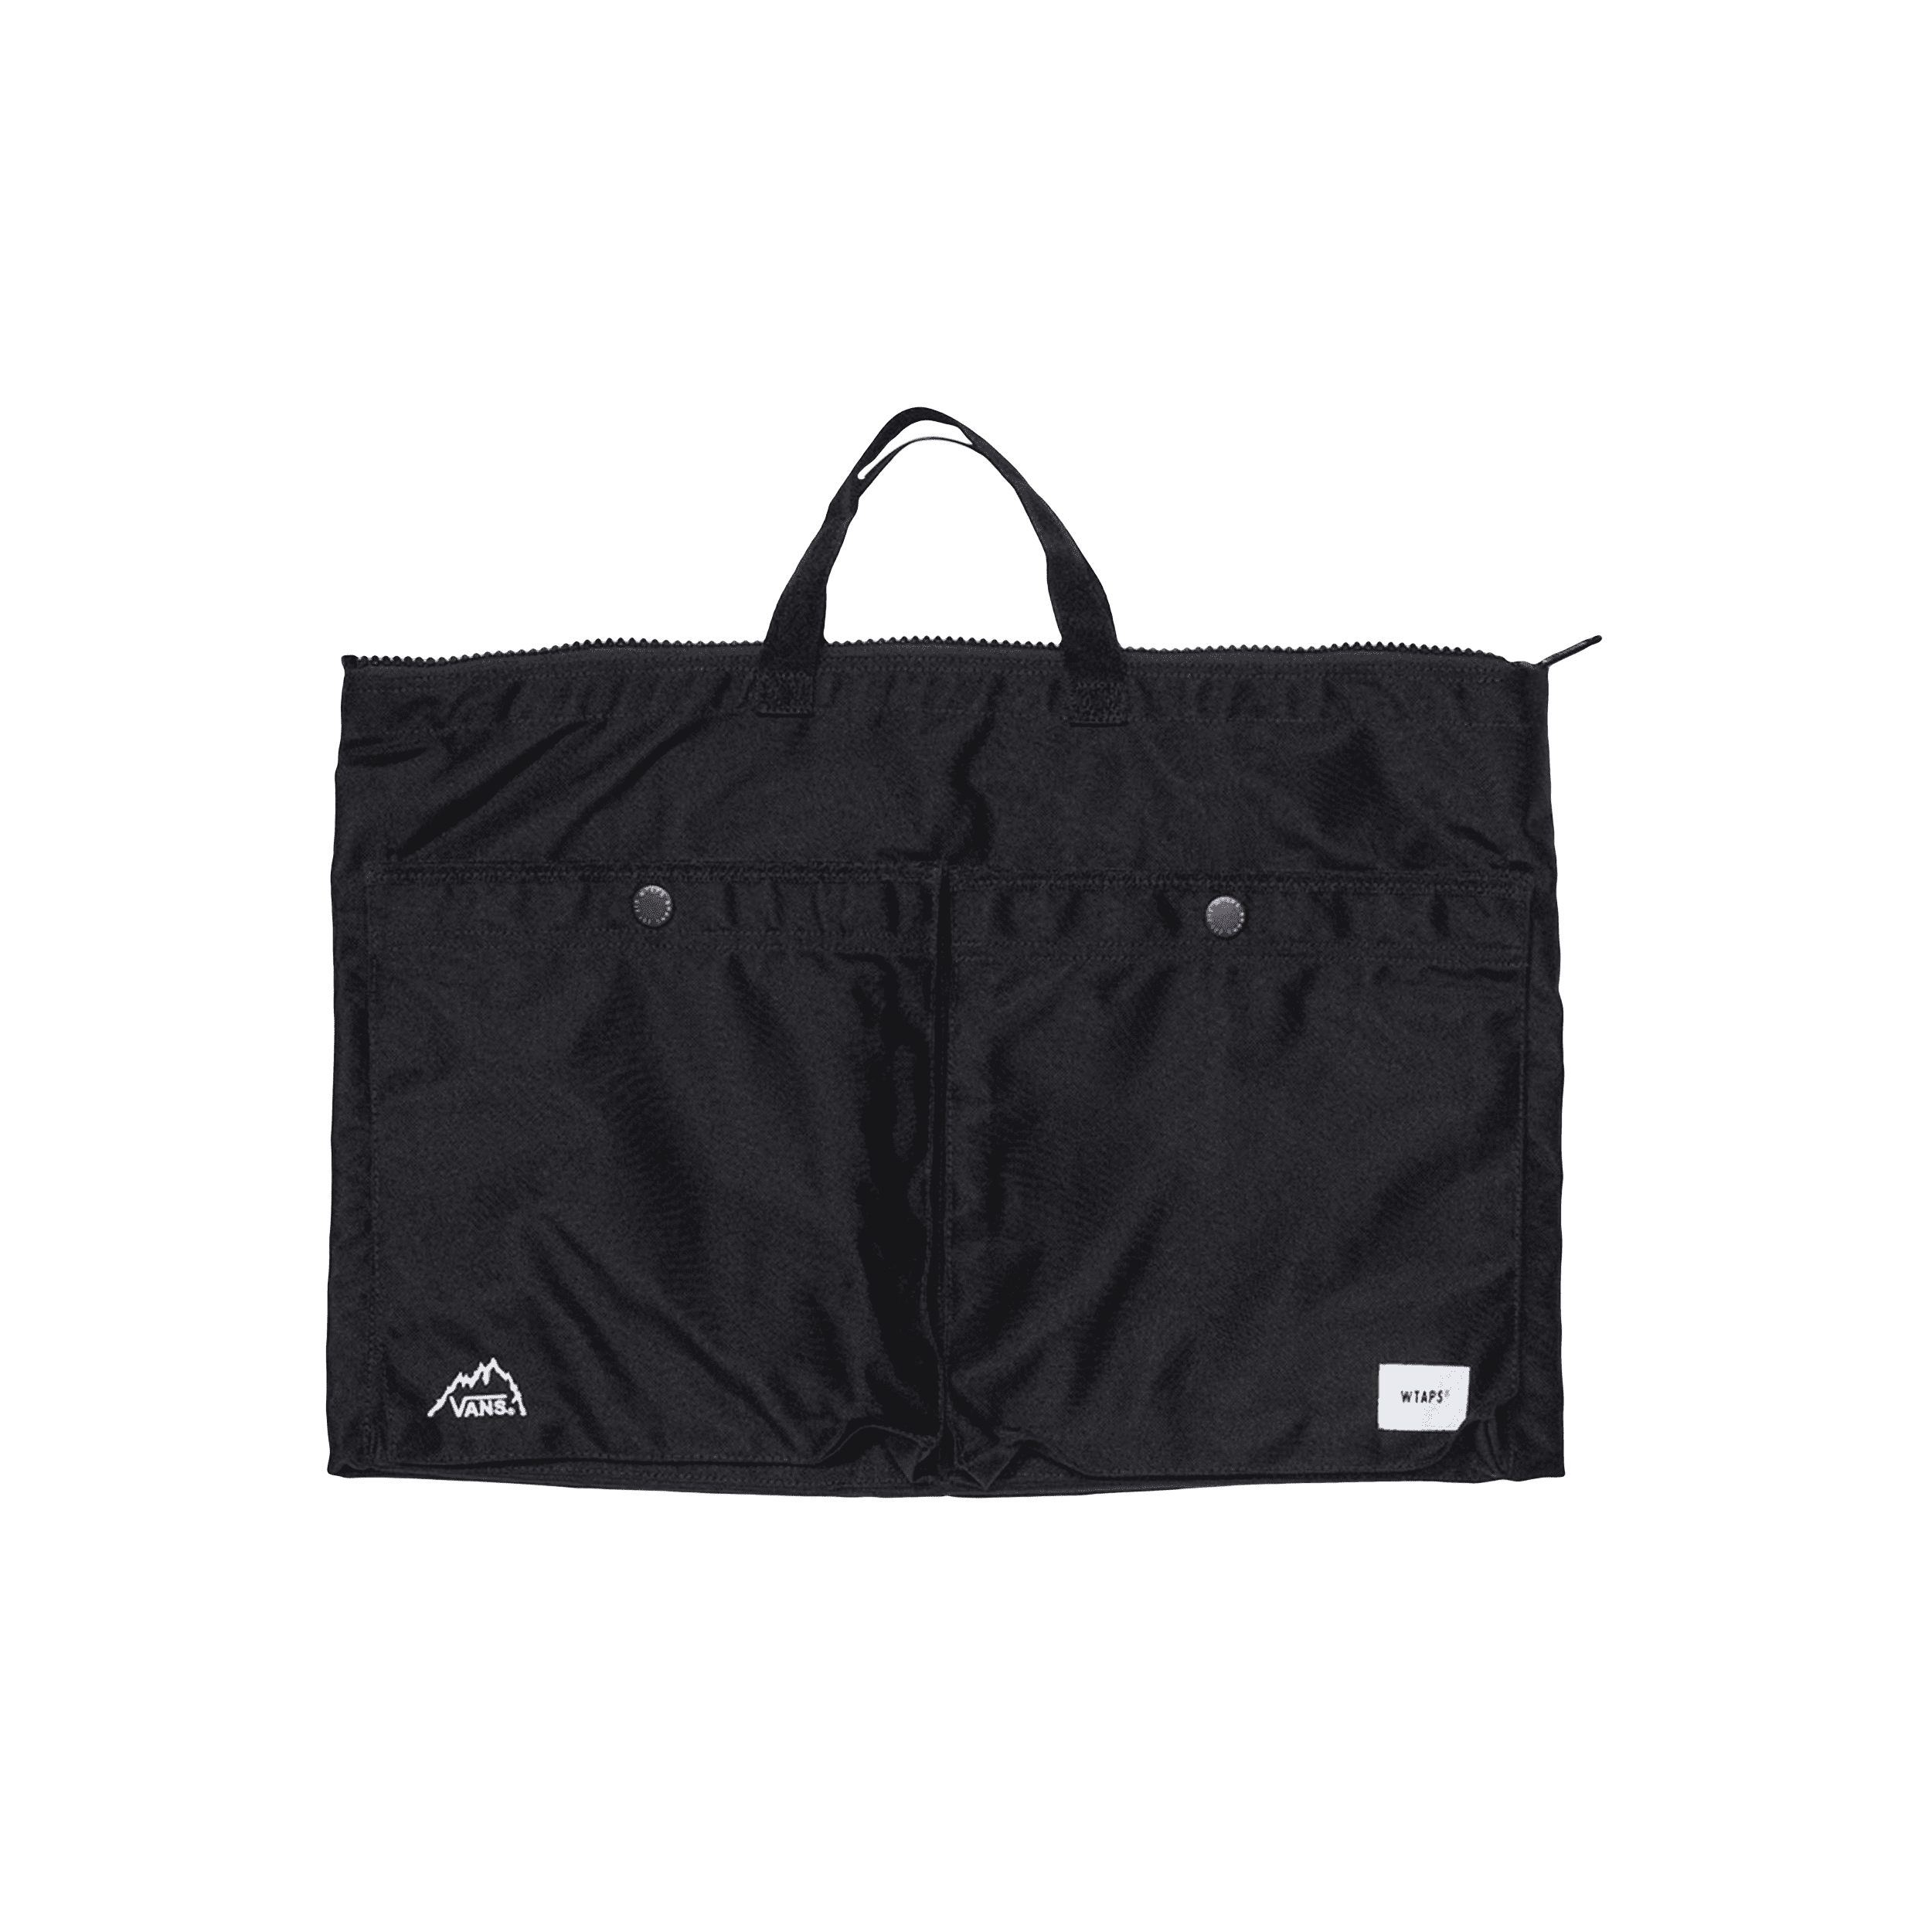 Brera 2way sling bag Medium